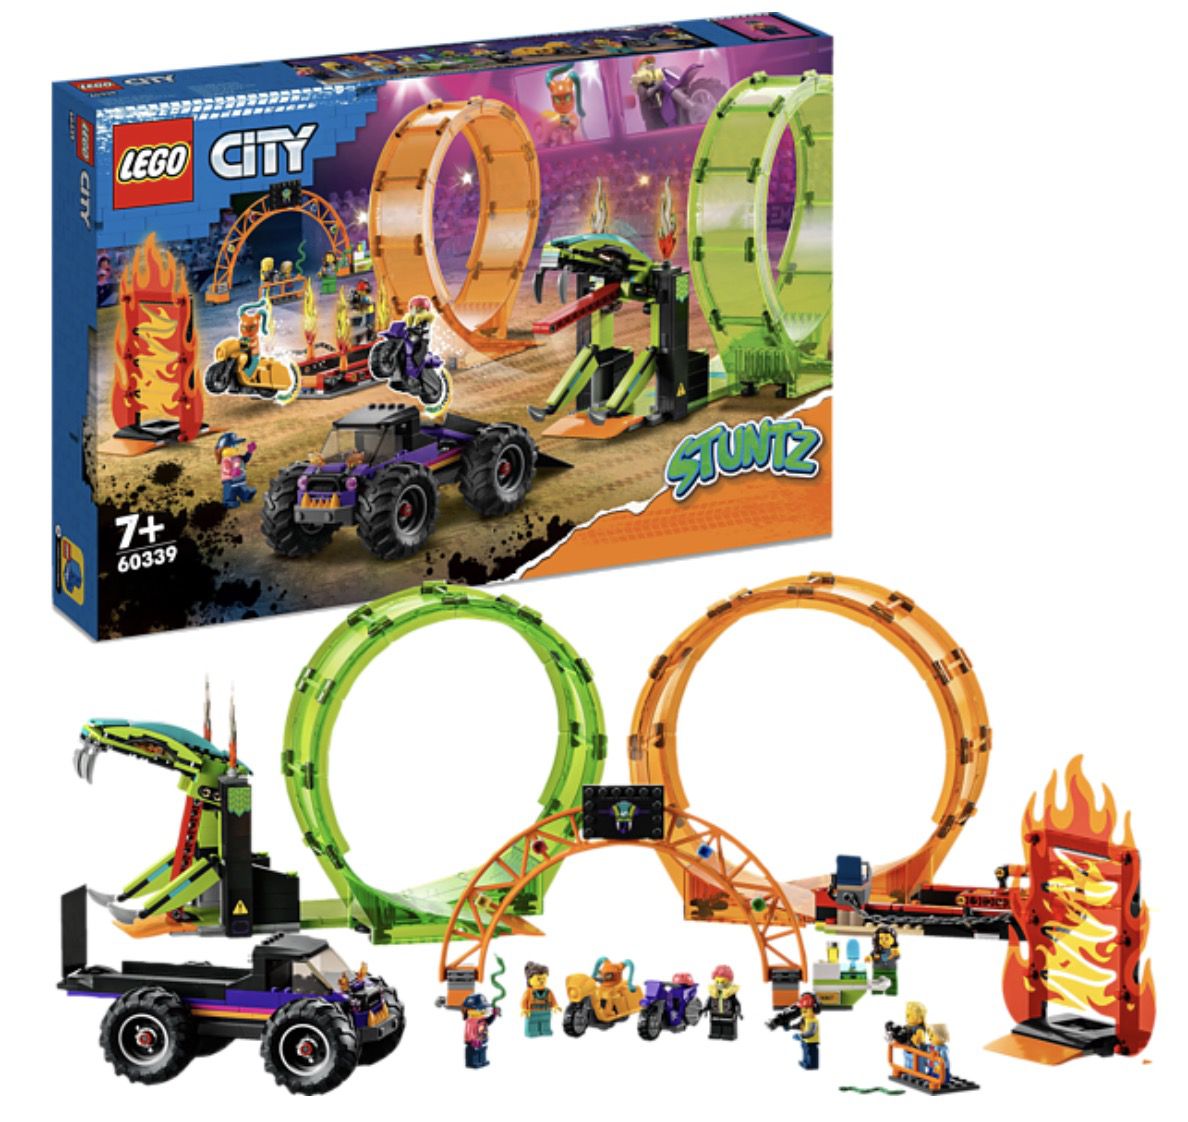 LEGO City Stuntz 60339 Stuntshow-Doppellooping Bausatz ab 62,75€ (statt 90€)